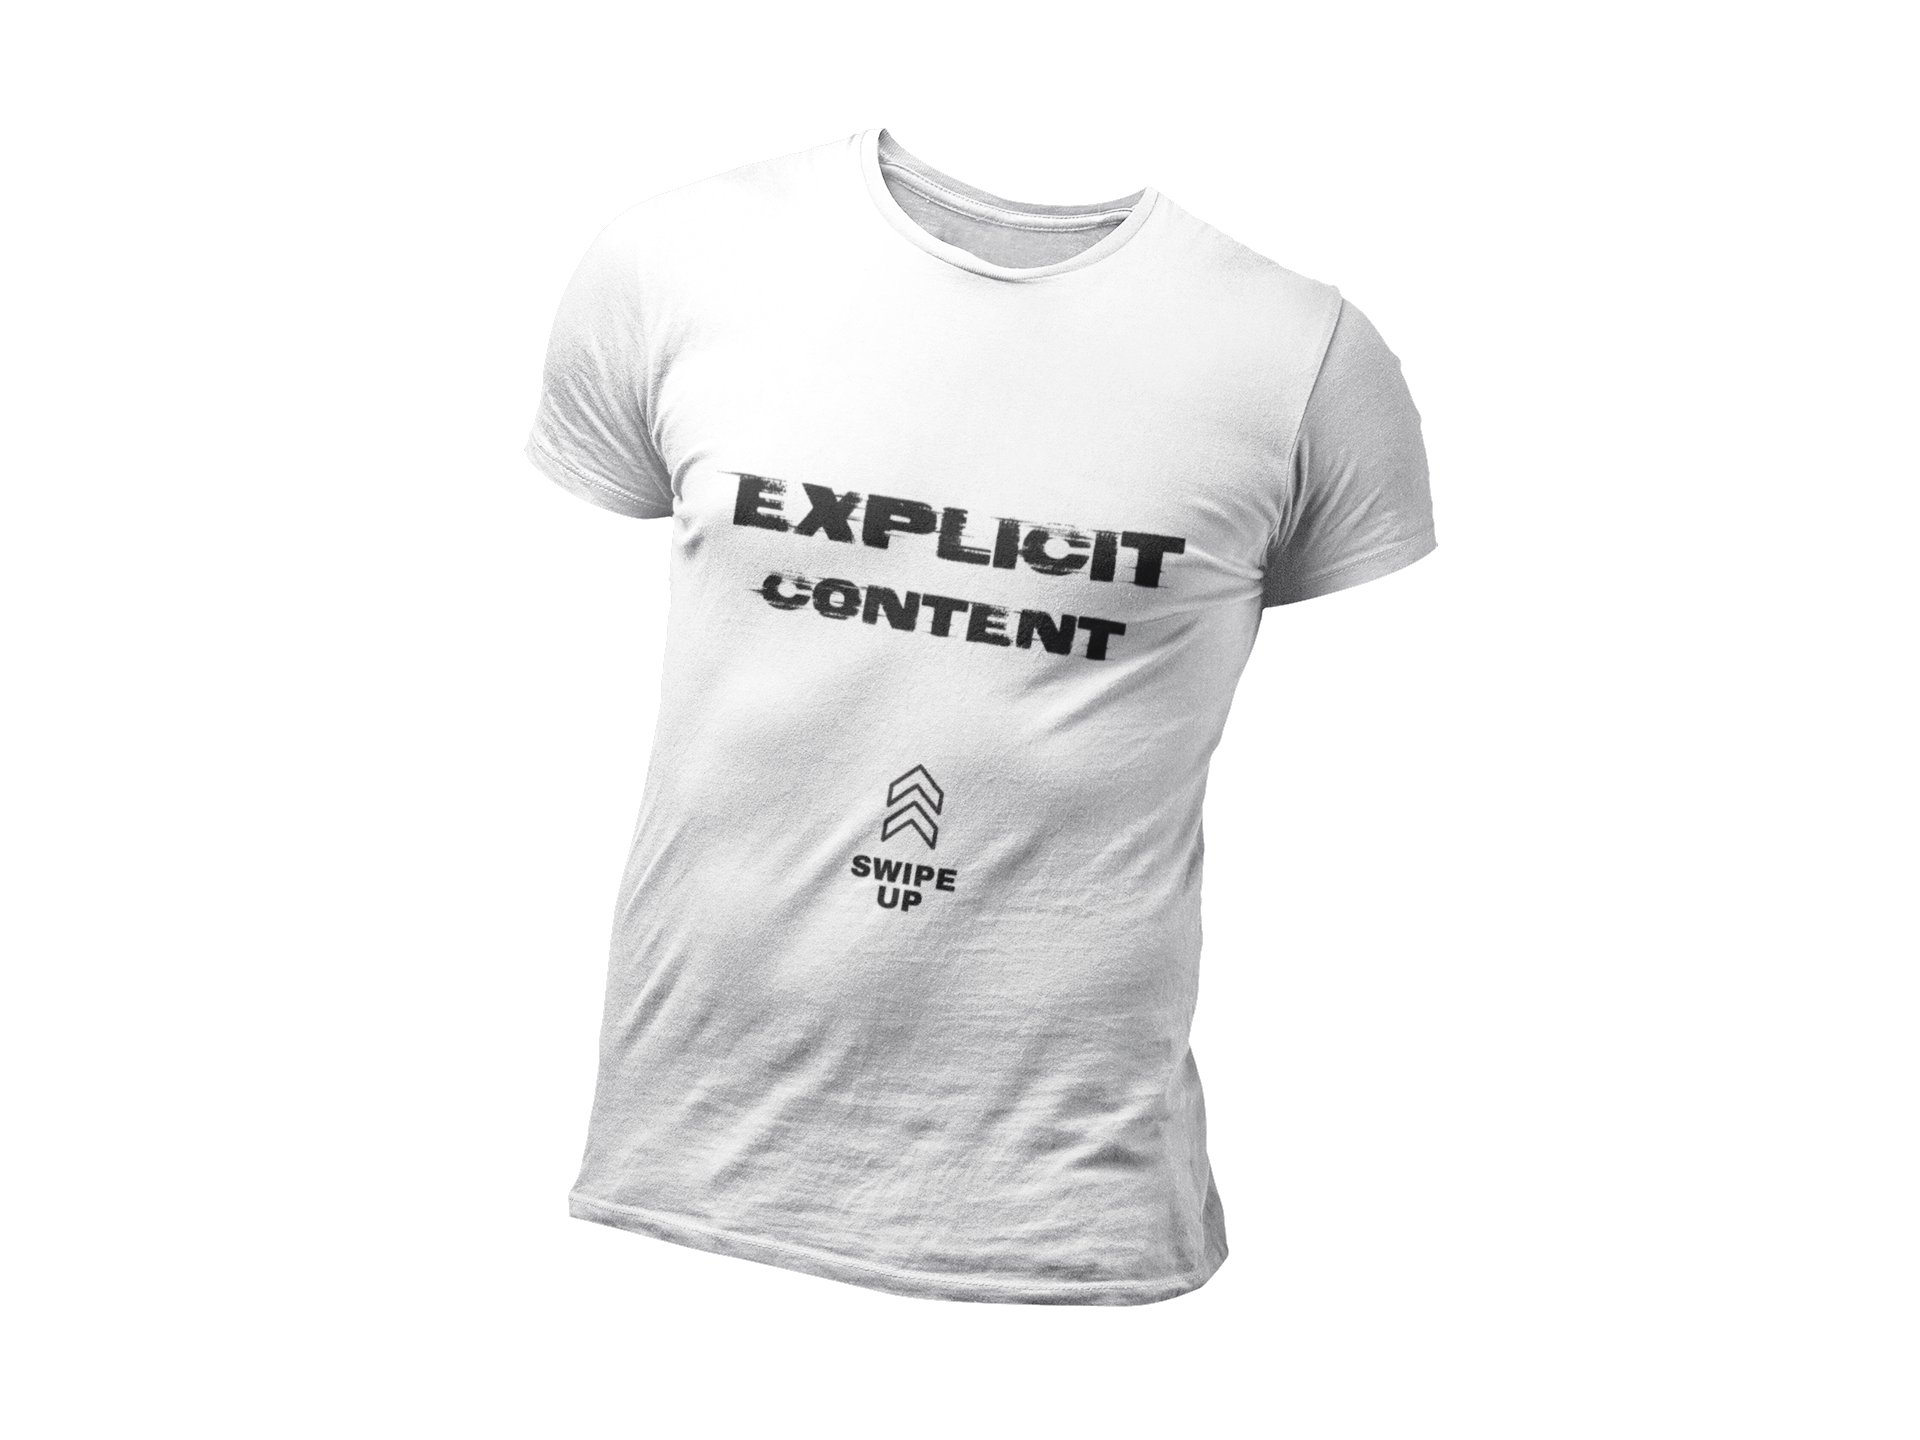 "Explicit Content" Short-Sleeve Unisex T-Shirt